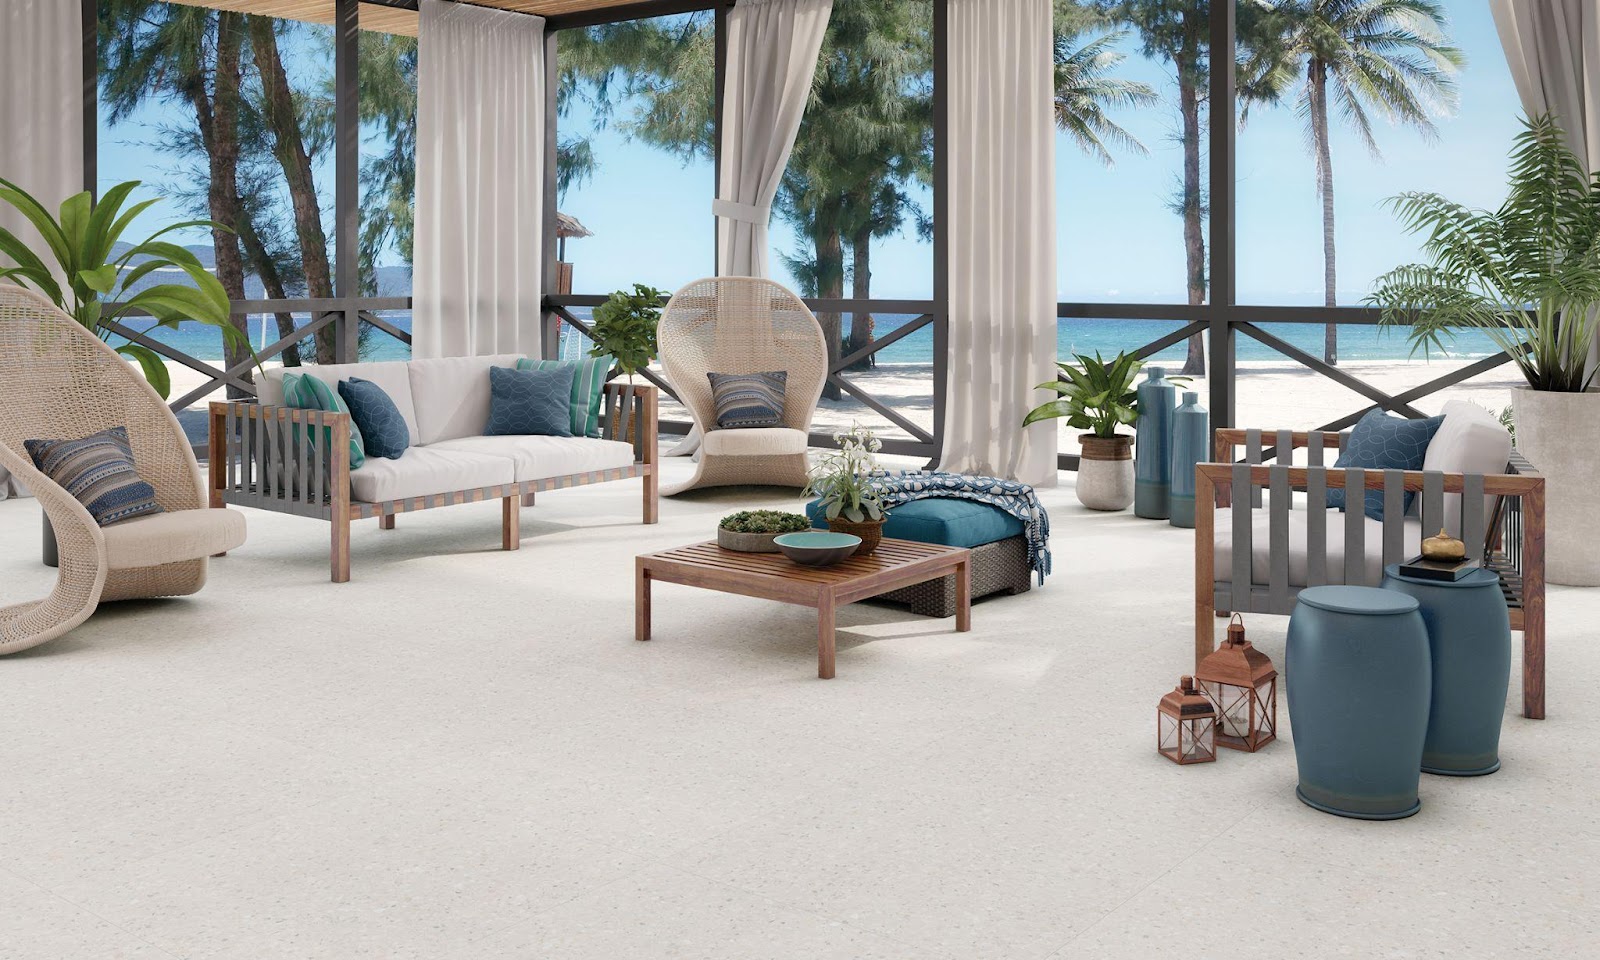 ambiente com vista para o mar com decoração praiana com sofás de madeira com estofado branco com almofadas azuis e verde, mesinha de centro d emadeira e granilite no piso imitando areia